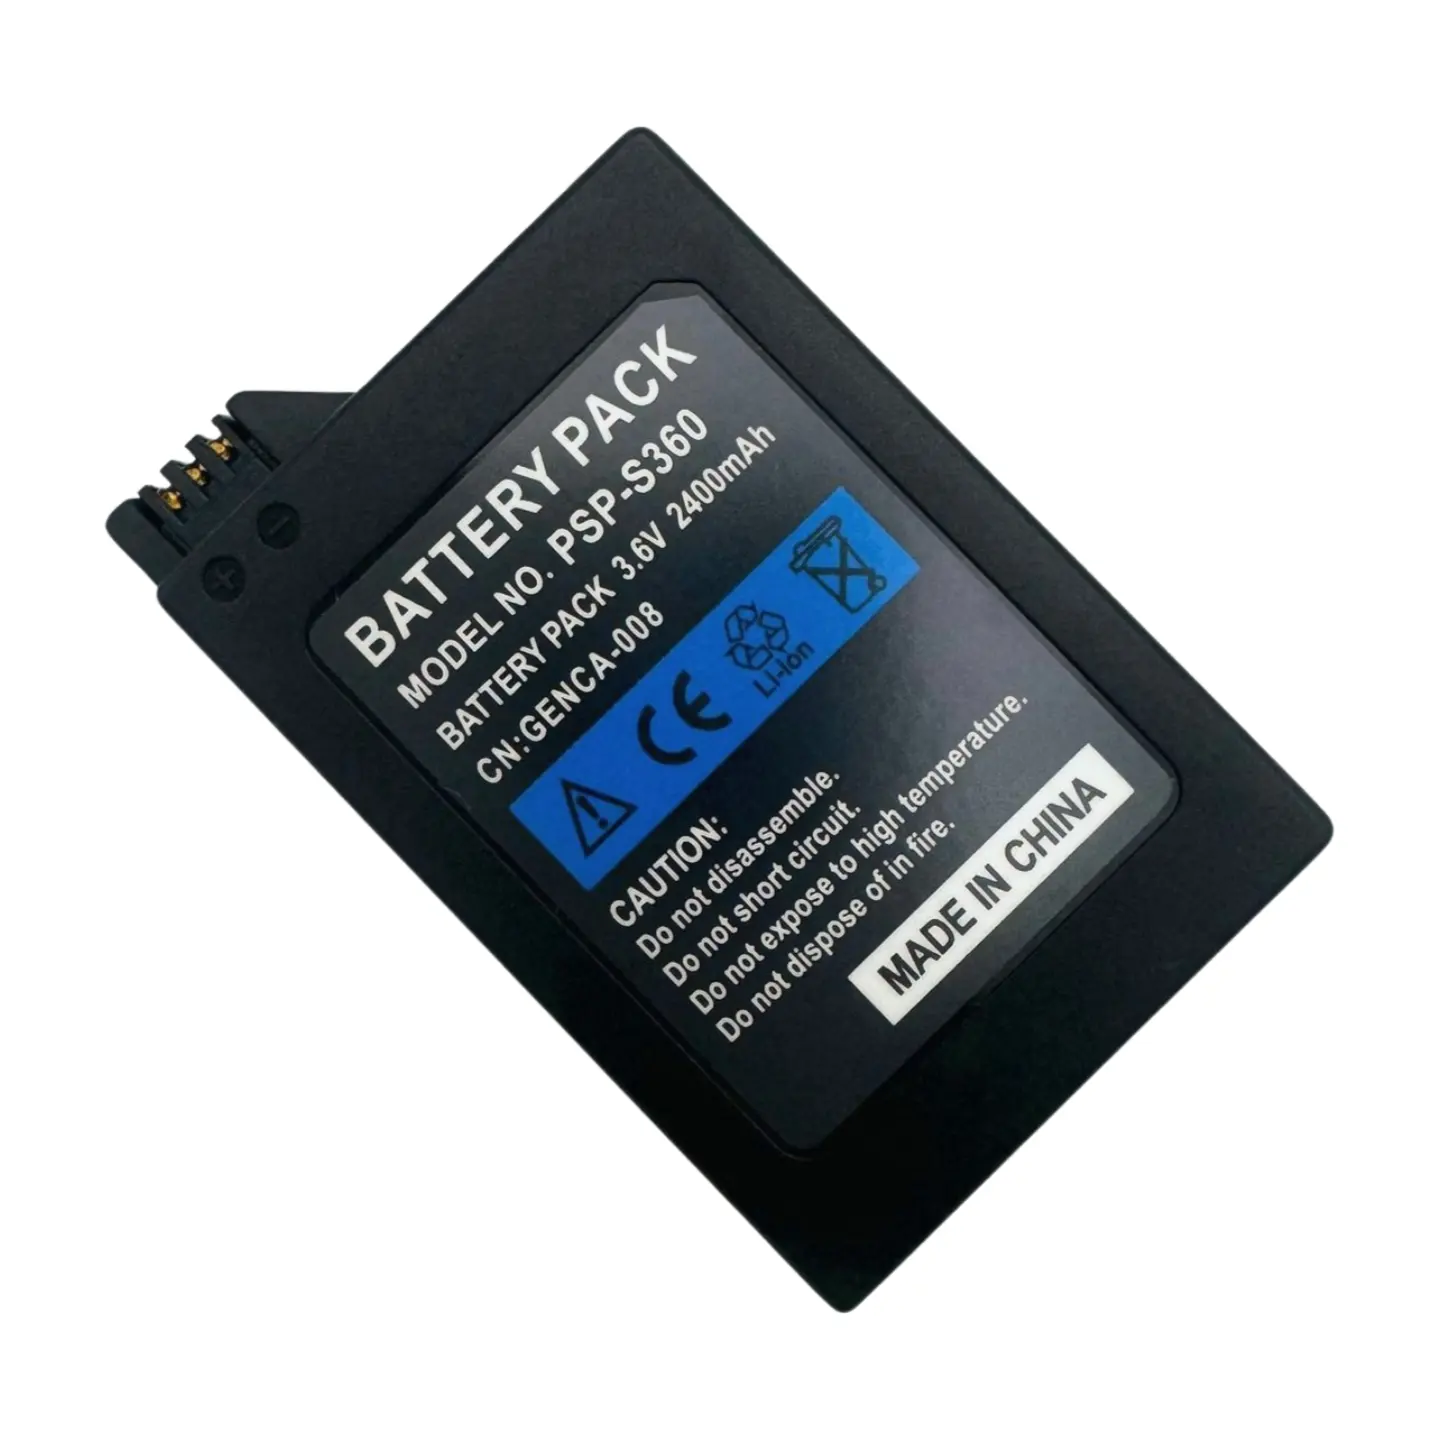 Bateria recarregável Honcam 2400mAh 3.6V para console Sony PSP 2000/3000 PSP-S110 Li-ion Polímero de Lítio